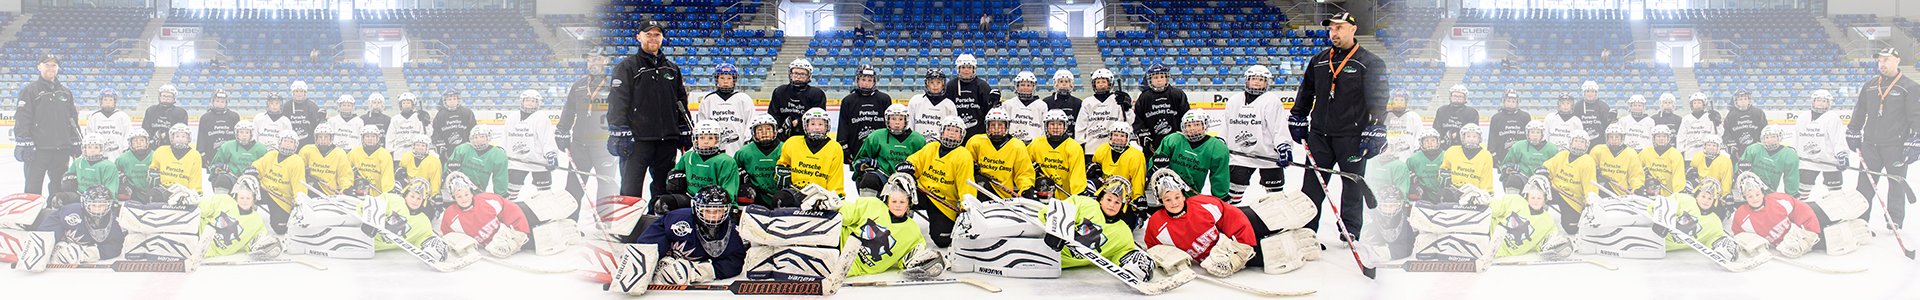 Mannschaftsbild Porsche Eishockey Camp